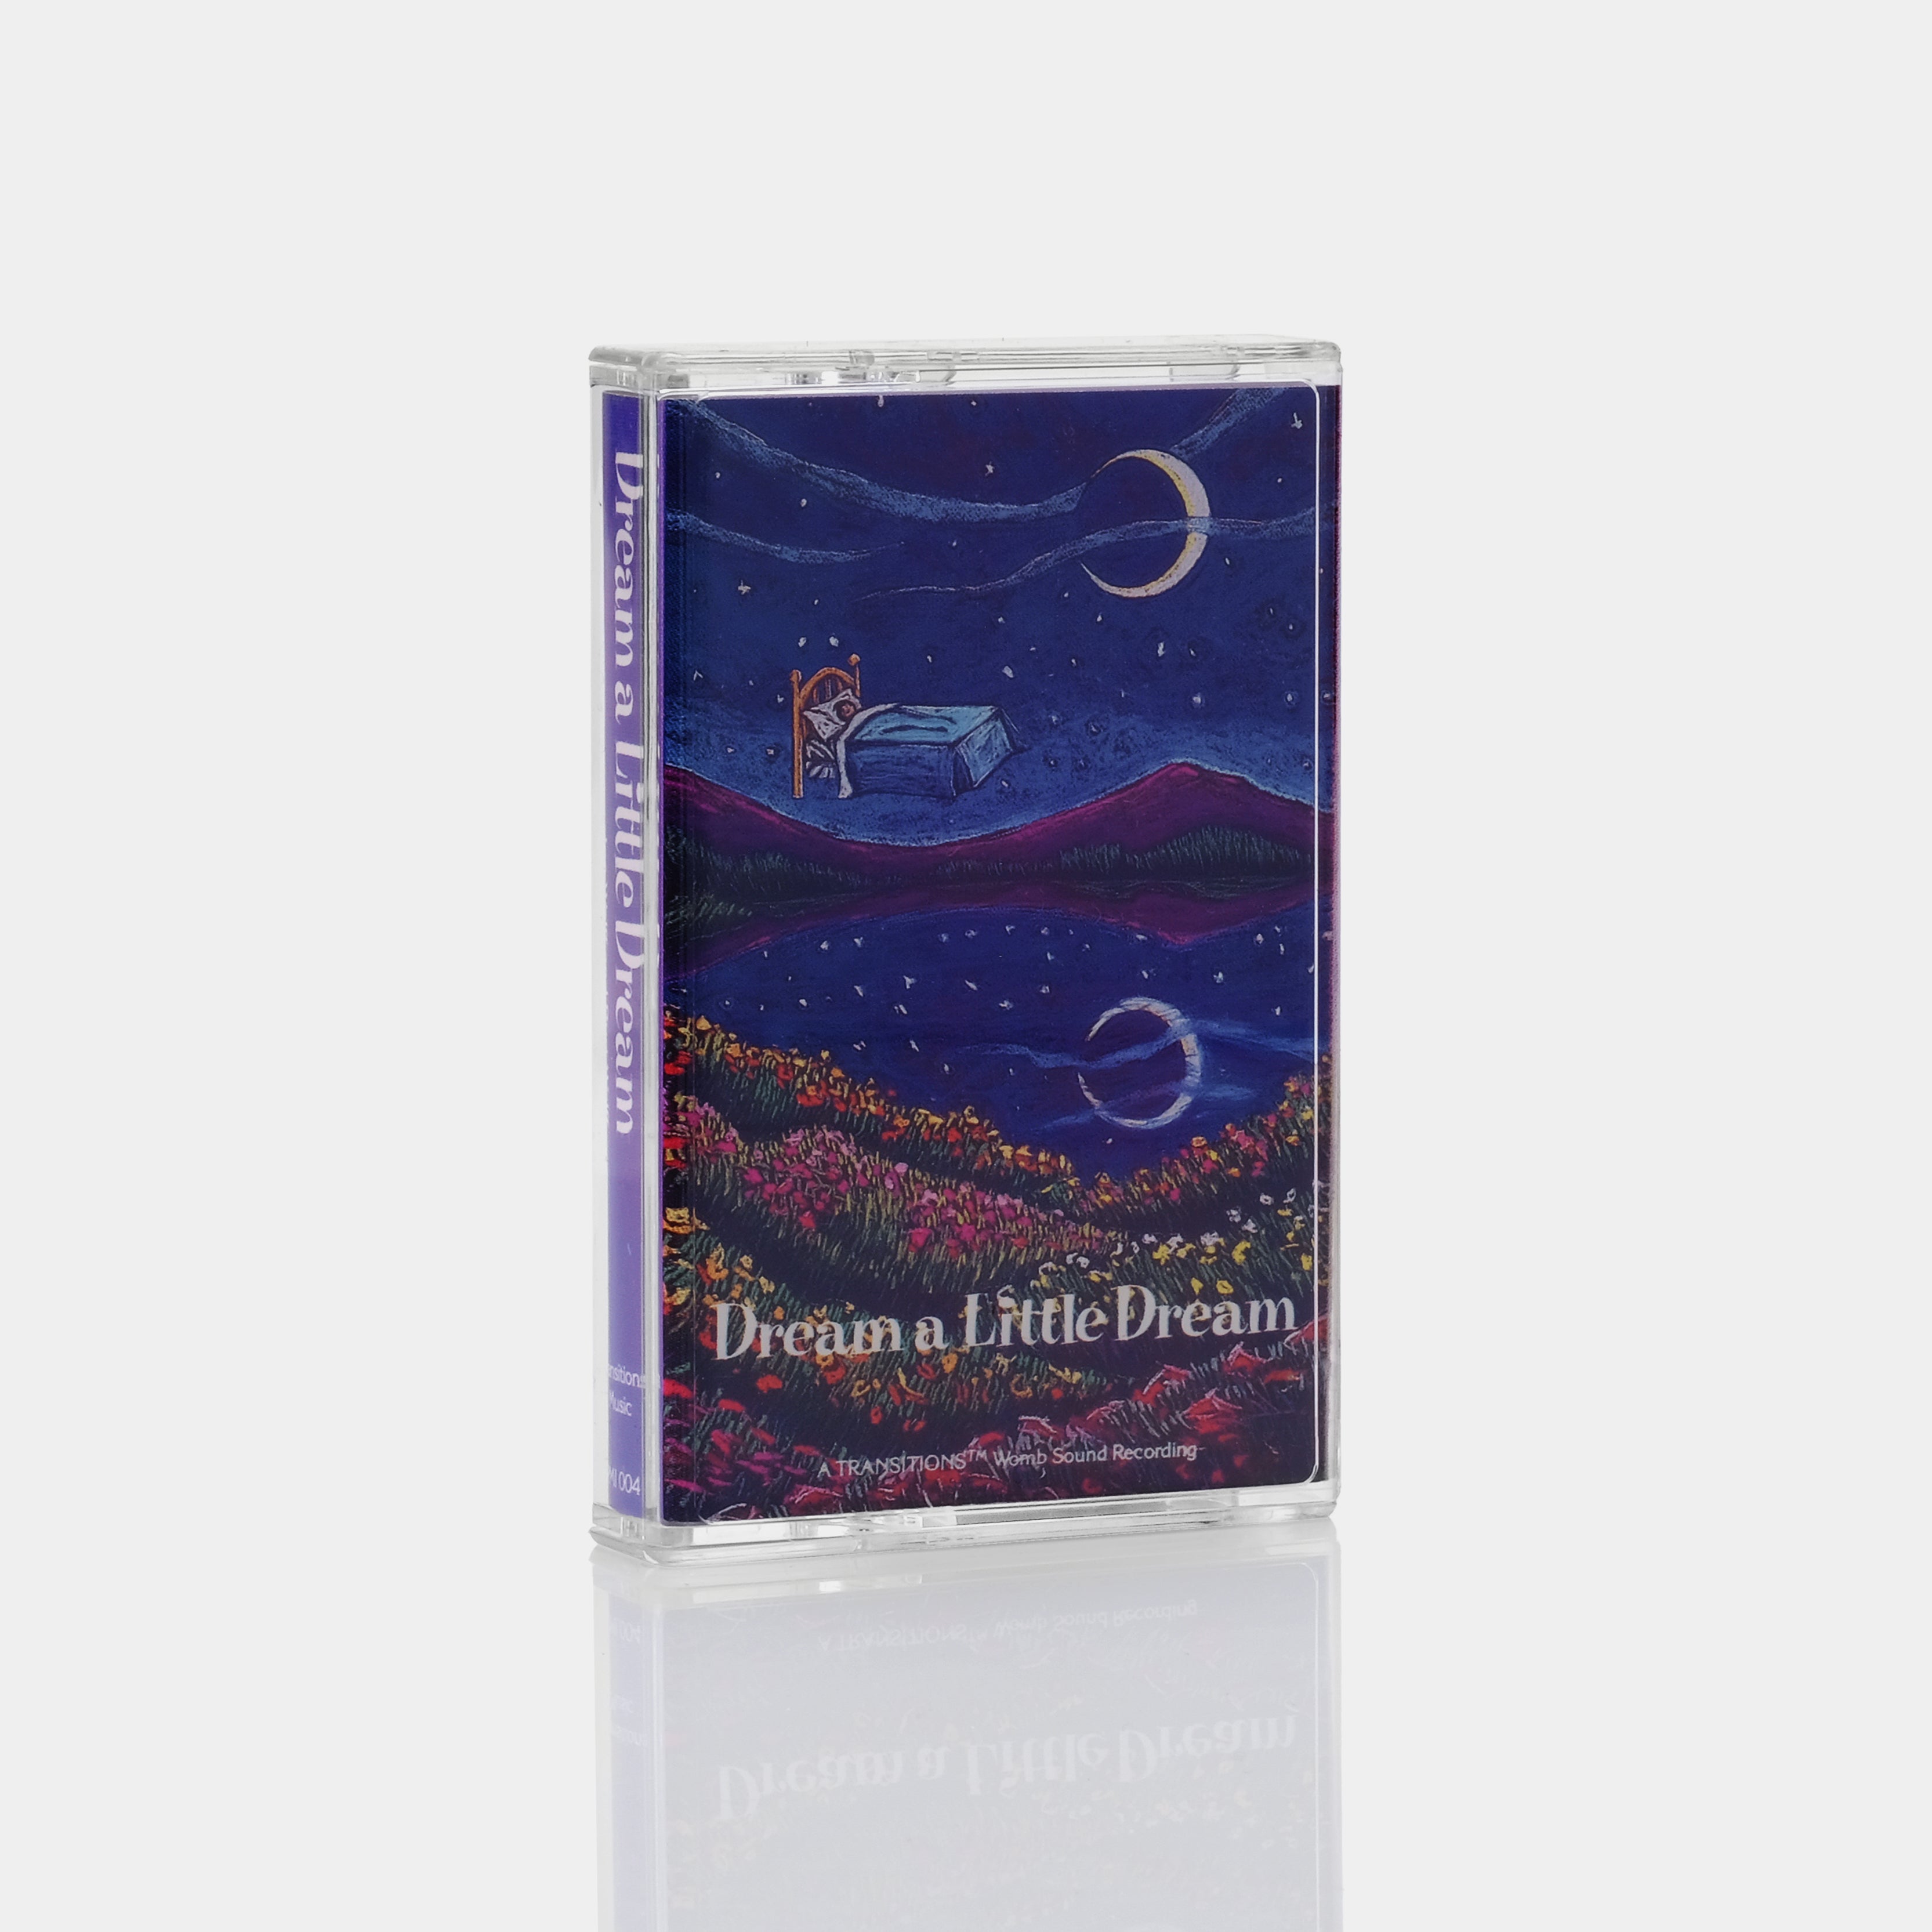 Joe Wolff and Burt Wolff - Dream A Little Dream Cassette Tape